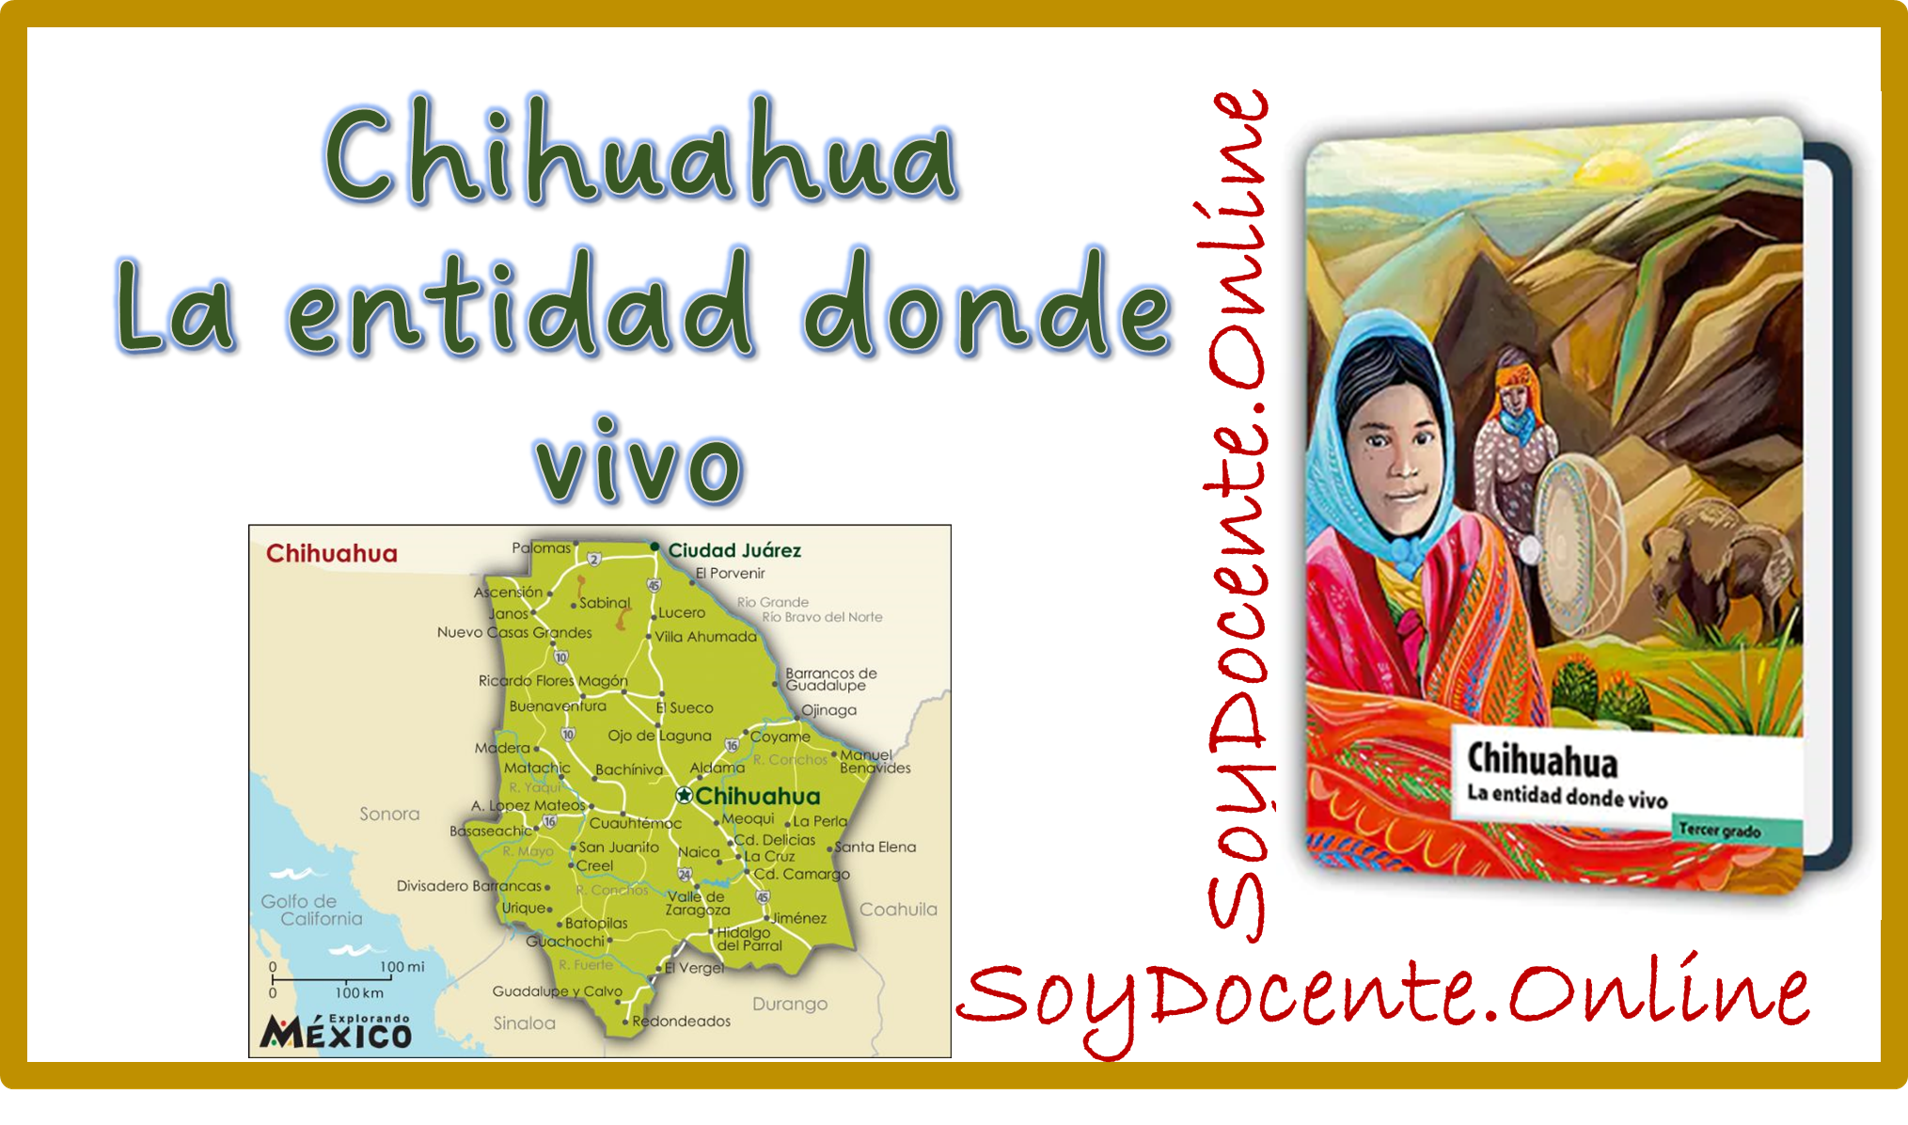 Ya puedes descargar gratis el Libro Chihuahua La entidad donde vivo tercer grado de Primaria, obra de la SEP, distribuido por la CONALITEG. En PDF